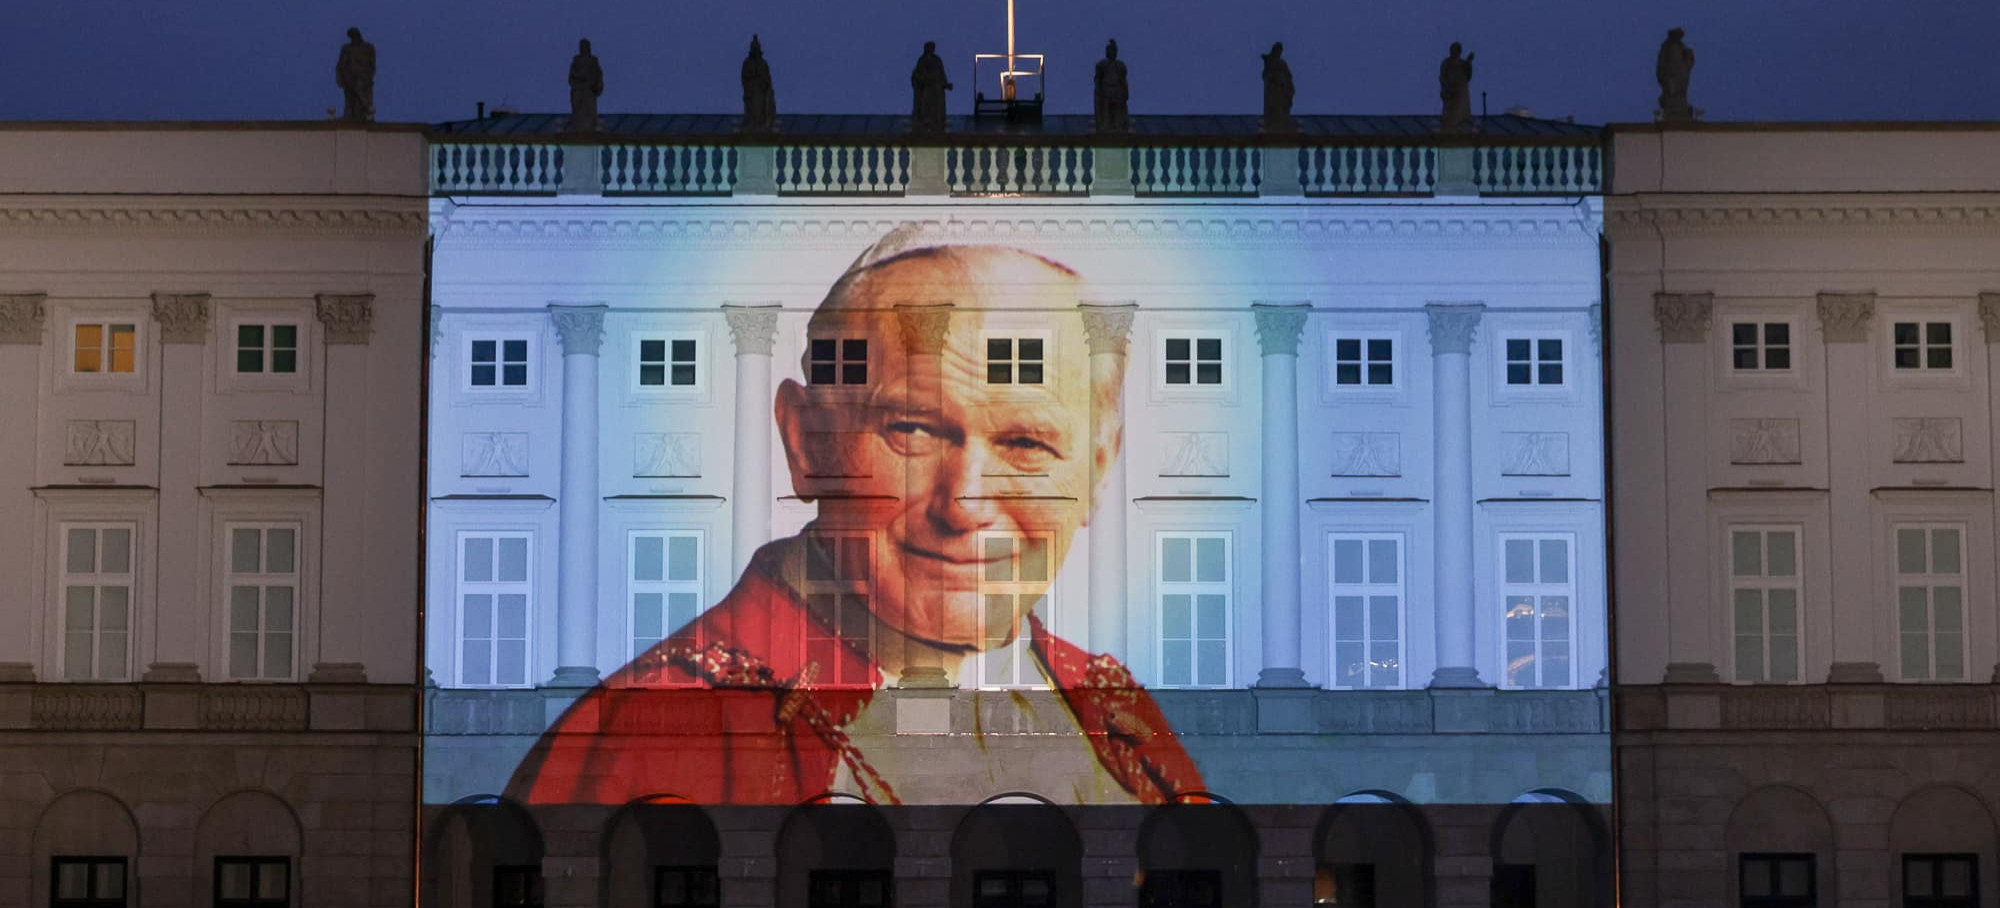 Marsze i uchwały w obronie św. Jana Pawła II. Co zrobi Rzeszów?